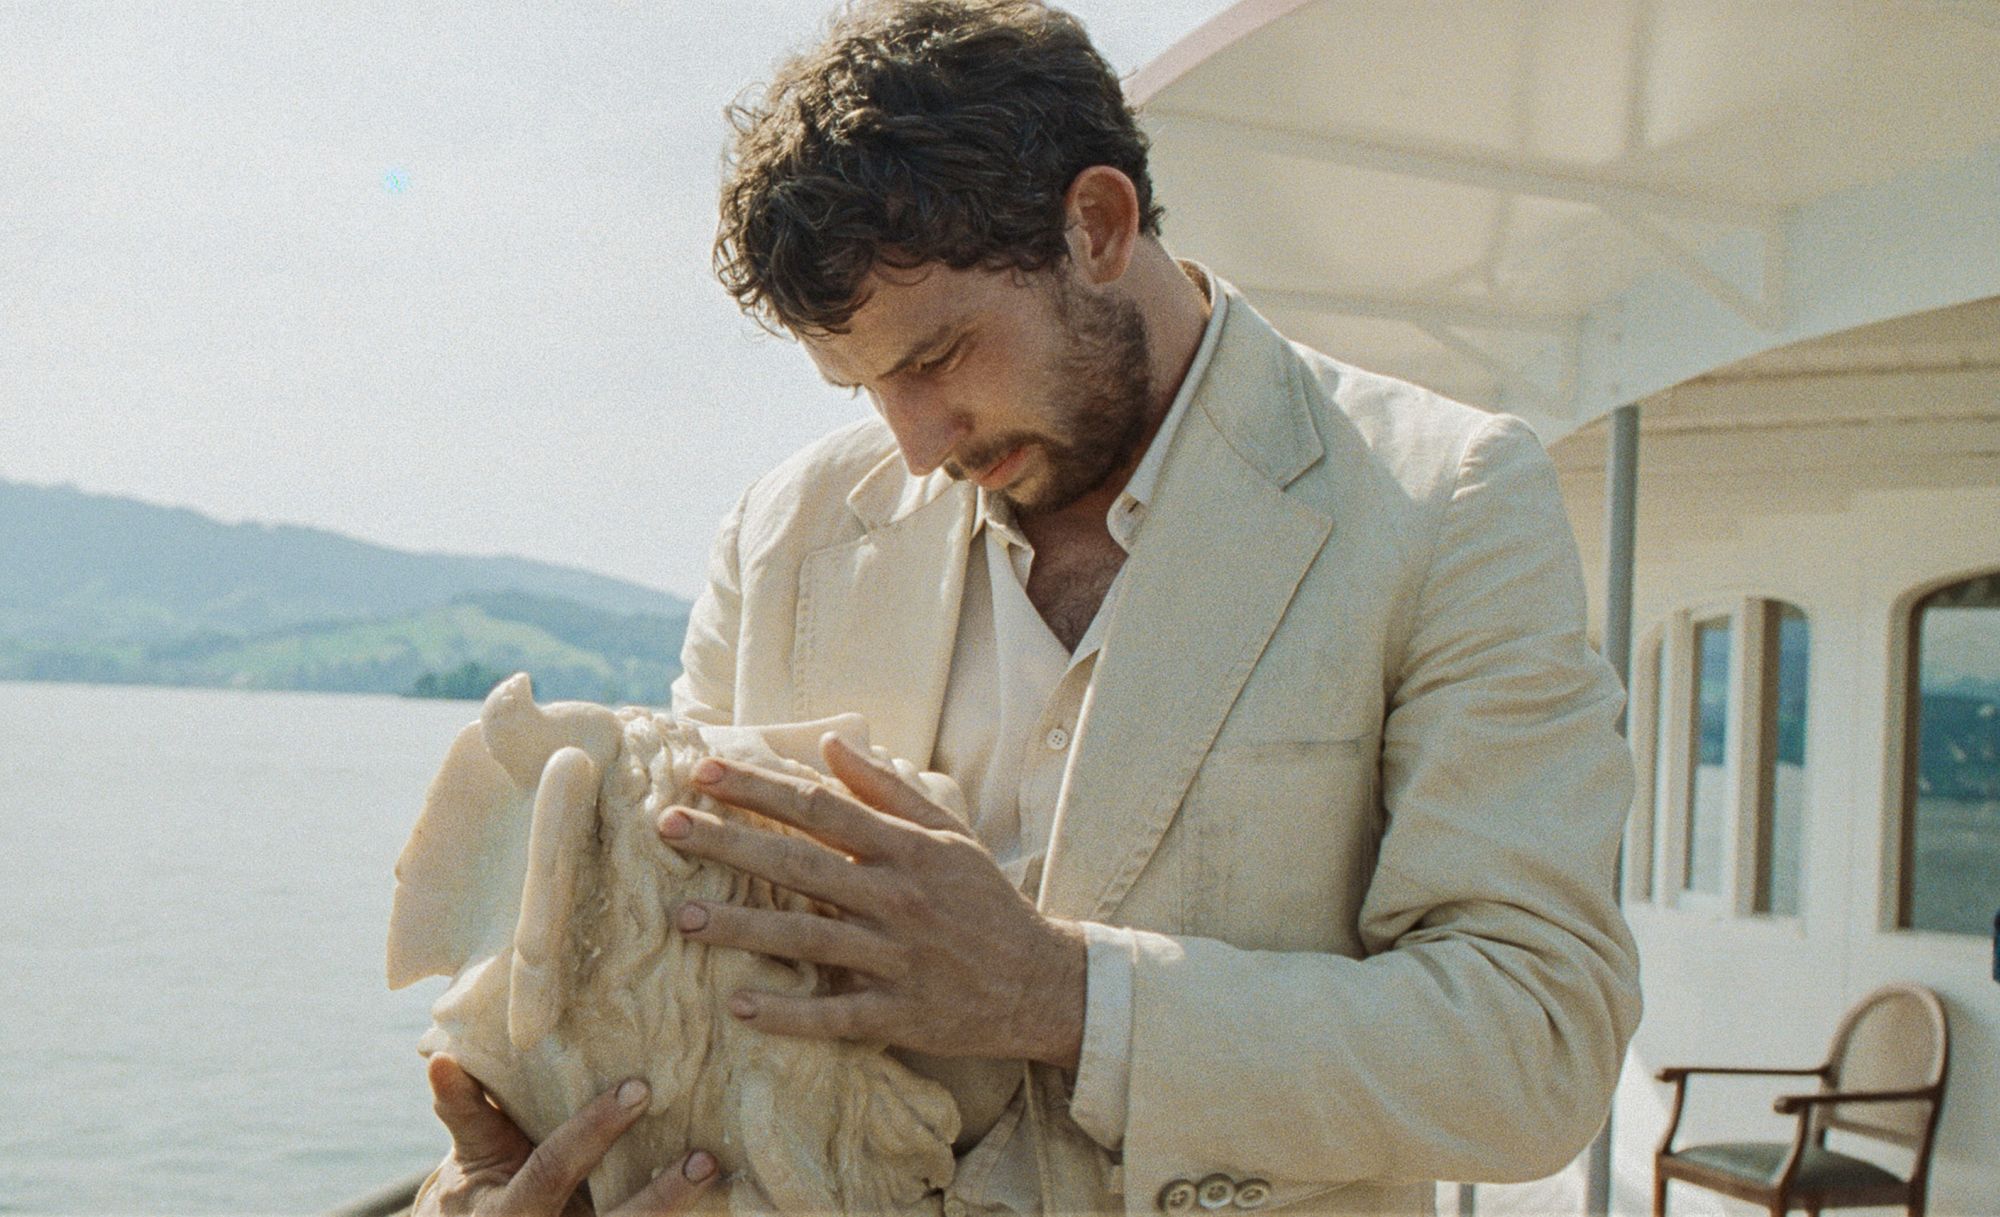 Josh O'Connor plays Arthur, a conflicted grave robber in Alice Rohrwacher's film "La Chimera."